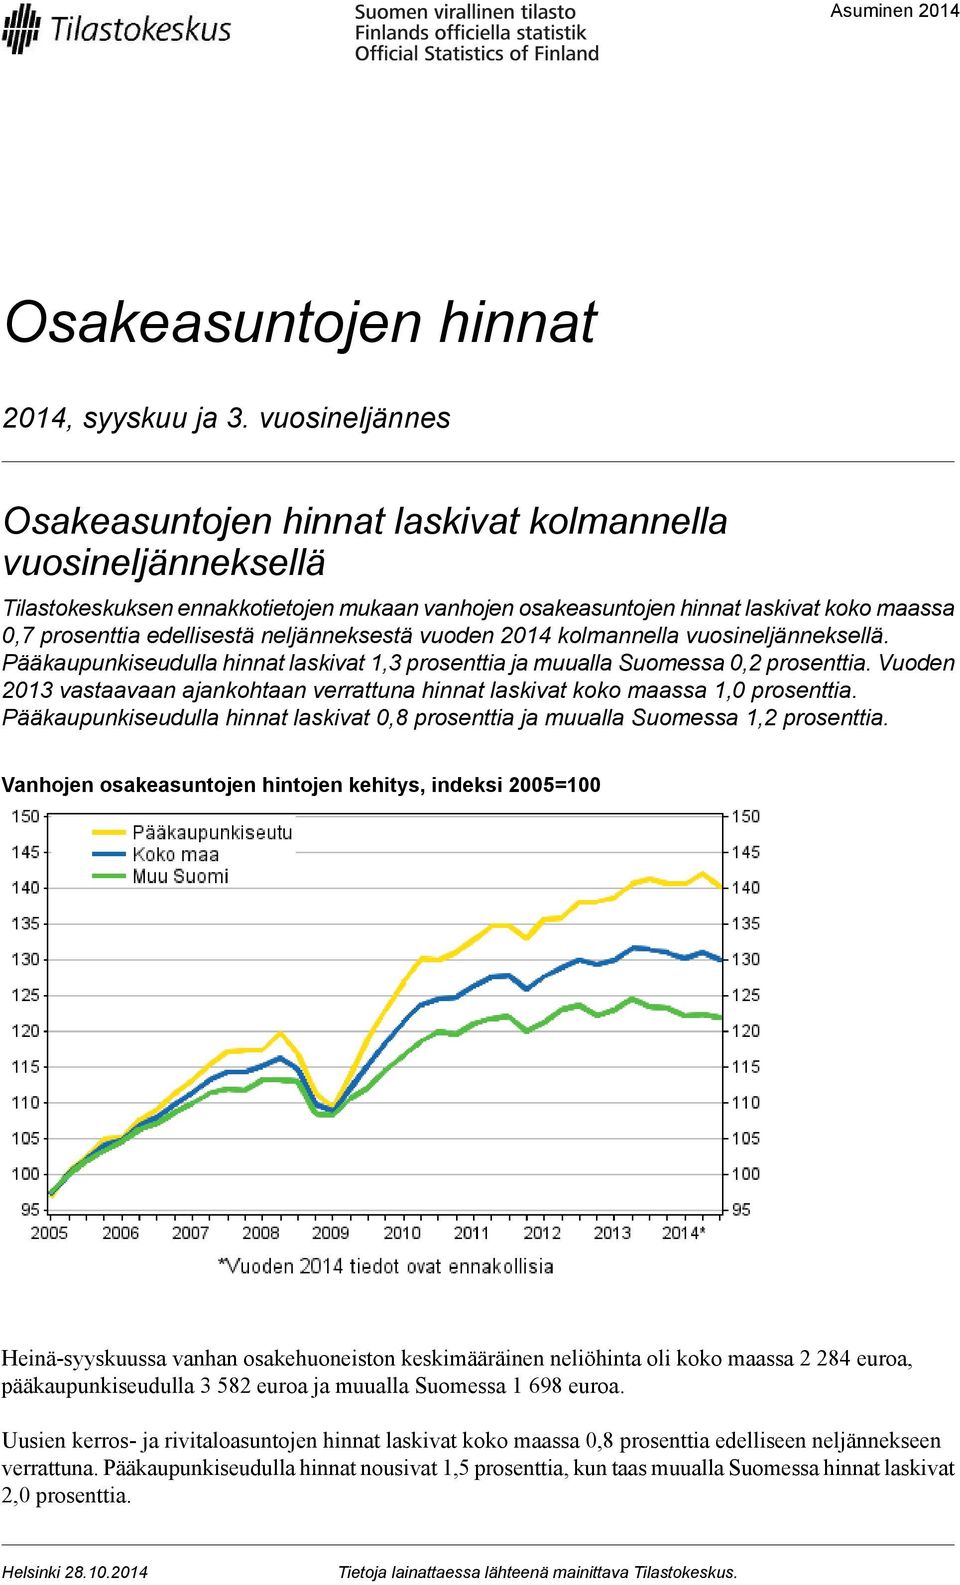 neljänneksestä vuoden 2014 kolmannella vuosineljänneksellä. Pääkaupunkiseudulla hinnat laskivat 1,3 prosenttia ja muualla Suomessa prosenttia.